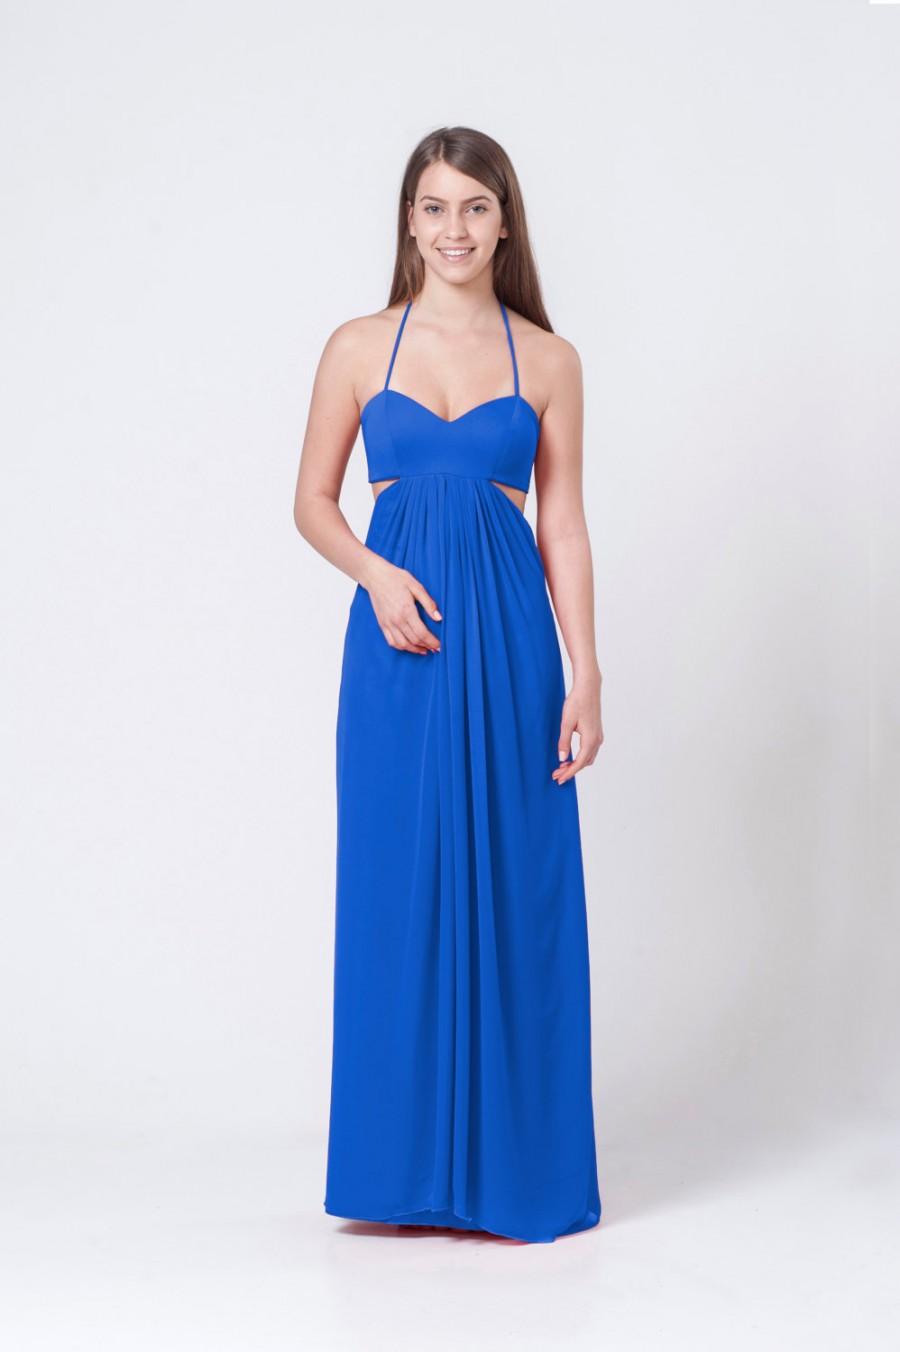 Hochzeit - Royal Blue Woman Dress, Maxi Dress, Party Dress for Women, Long Dress, Chiffon Dress, Cocktail Dress, Elegant Dress, Open Back Dress, Gown